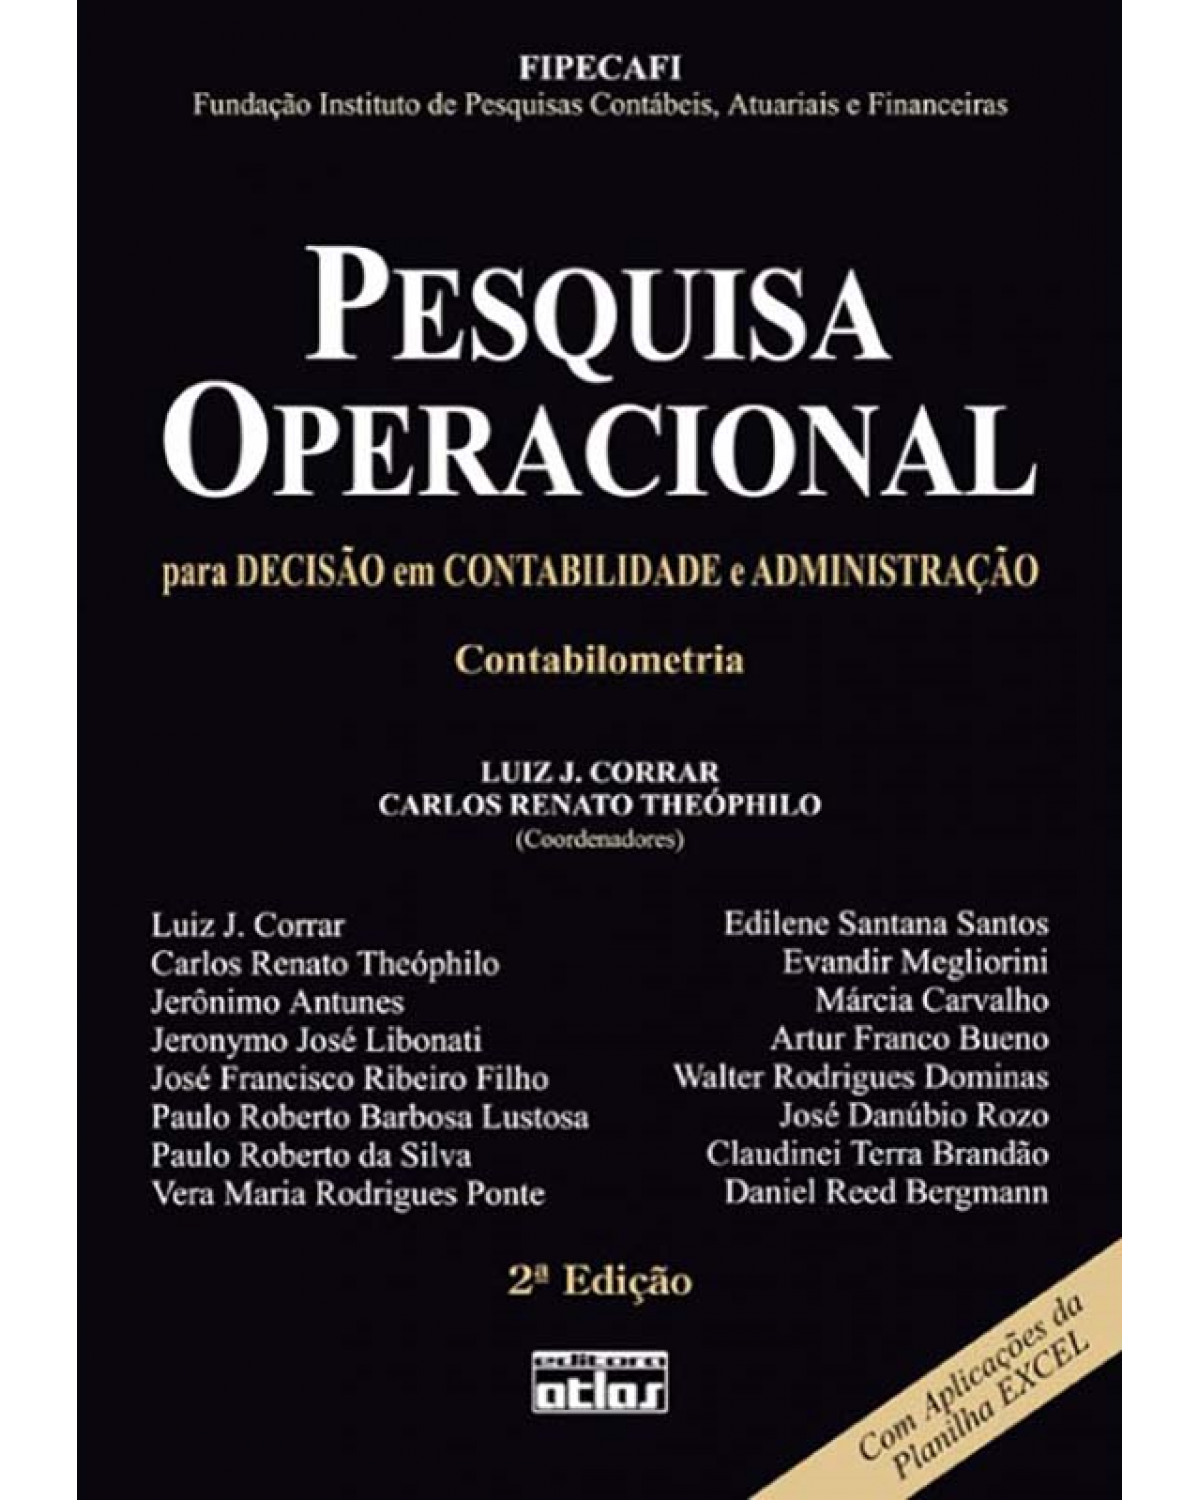 Pesquisa operacional para decisão em contabilidade e administração - 2ª Edição | 2008